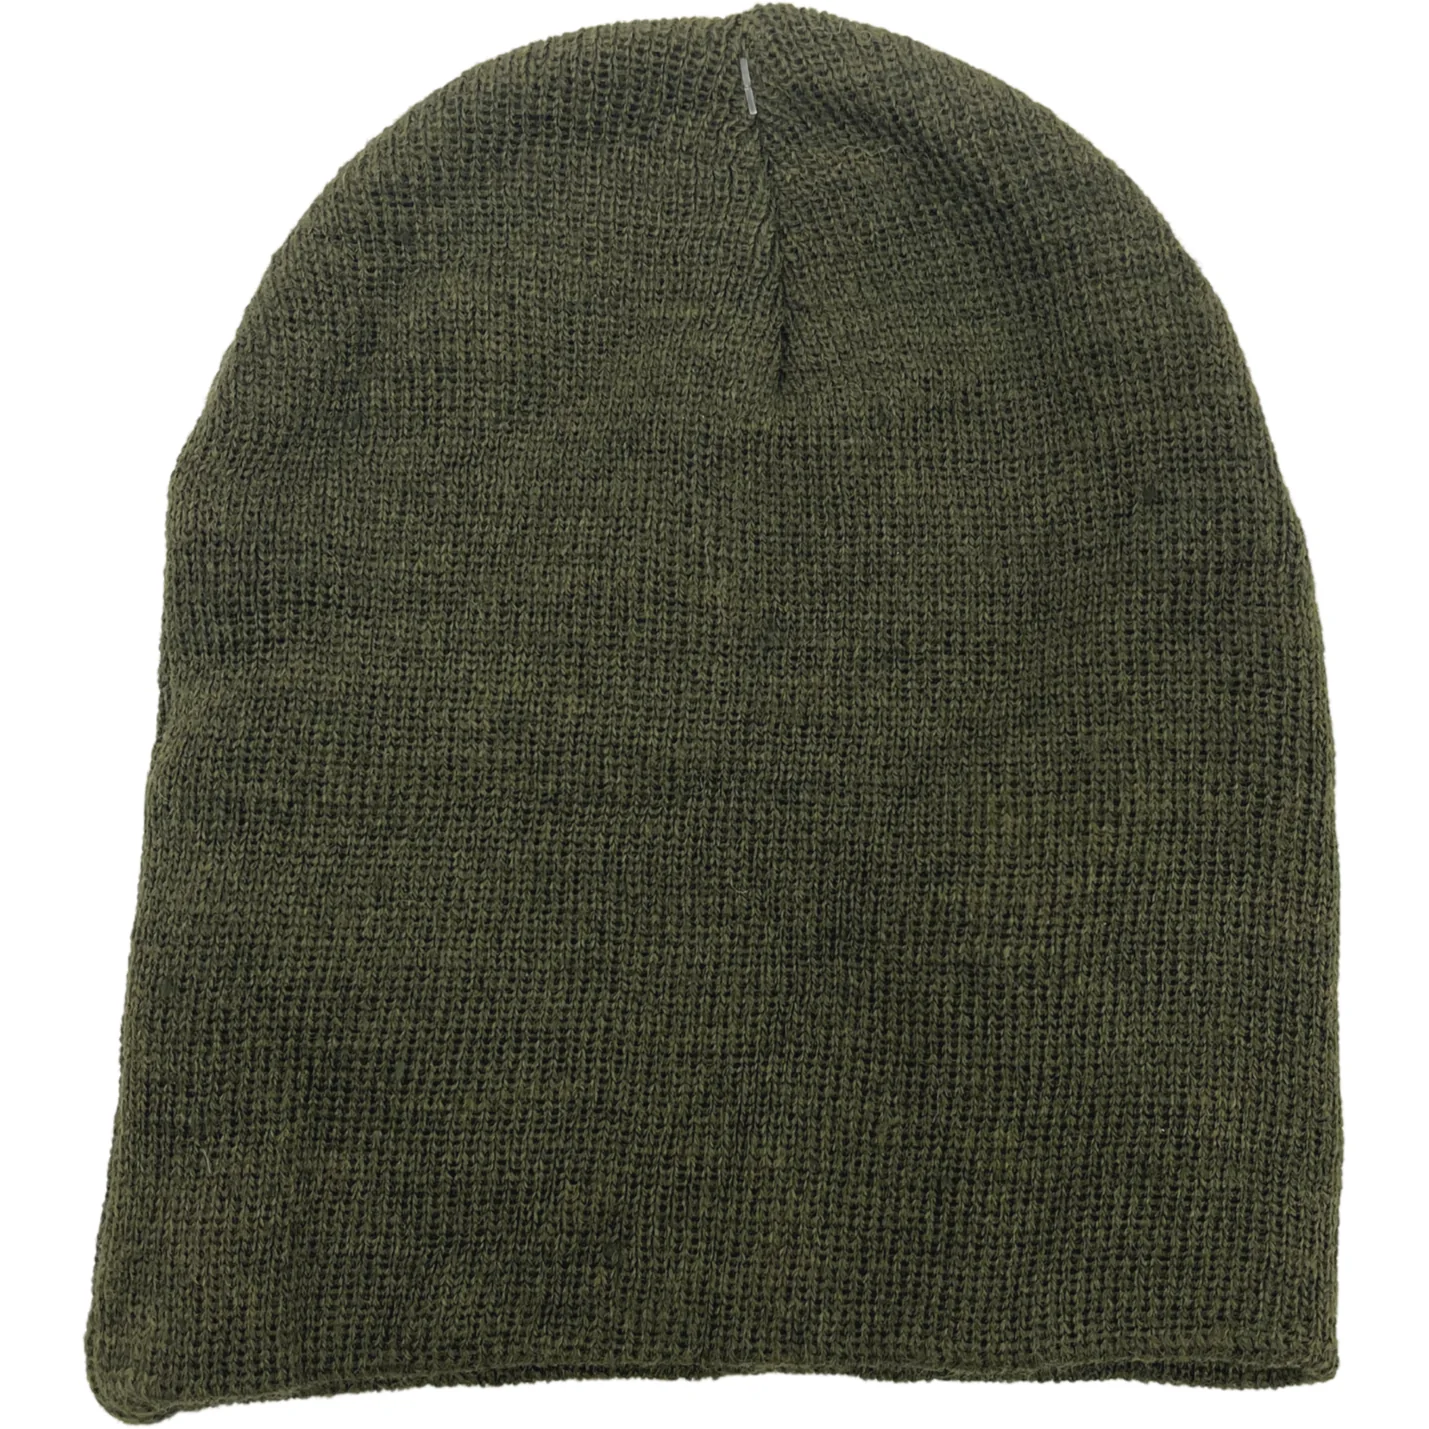 Children's Winter Hat / 3 Pack / Green / Winter Toque / One Size